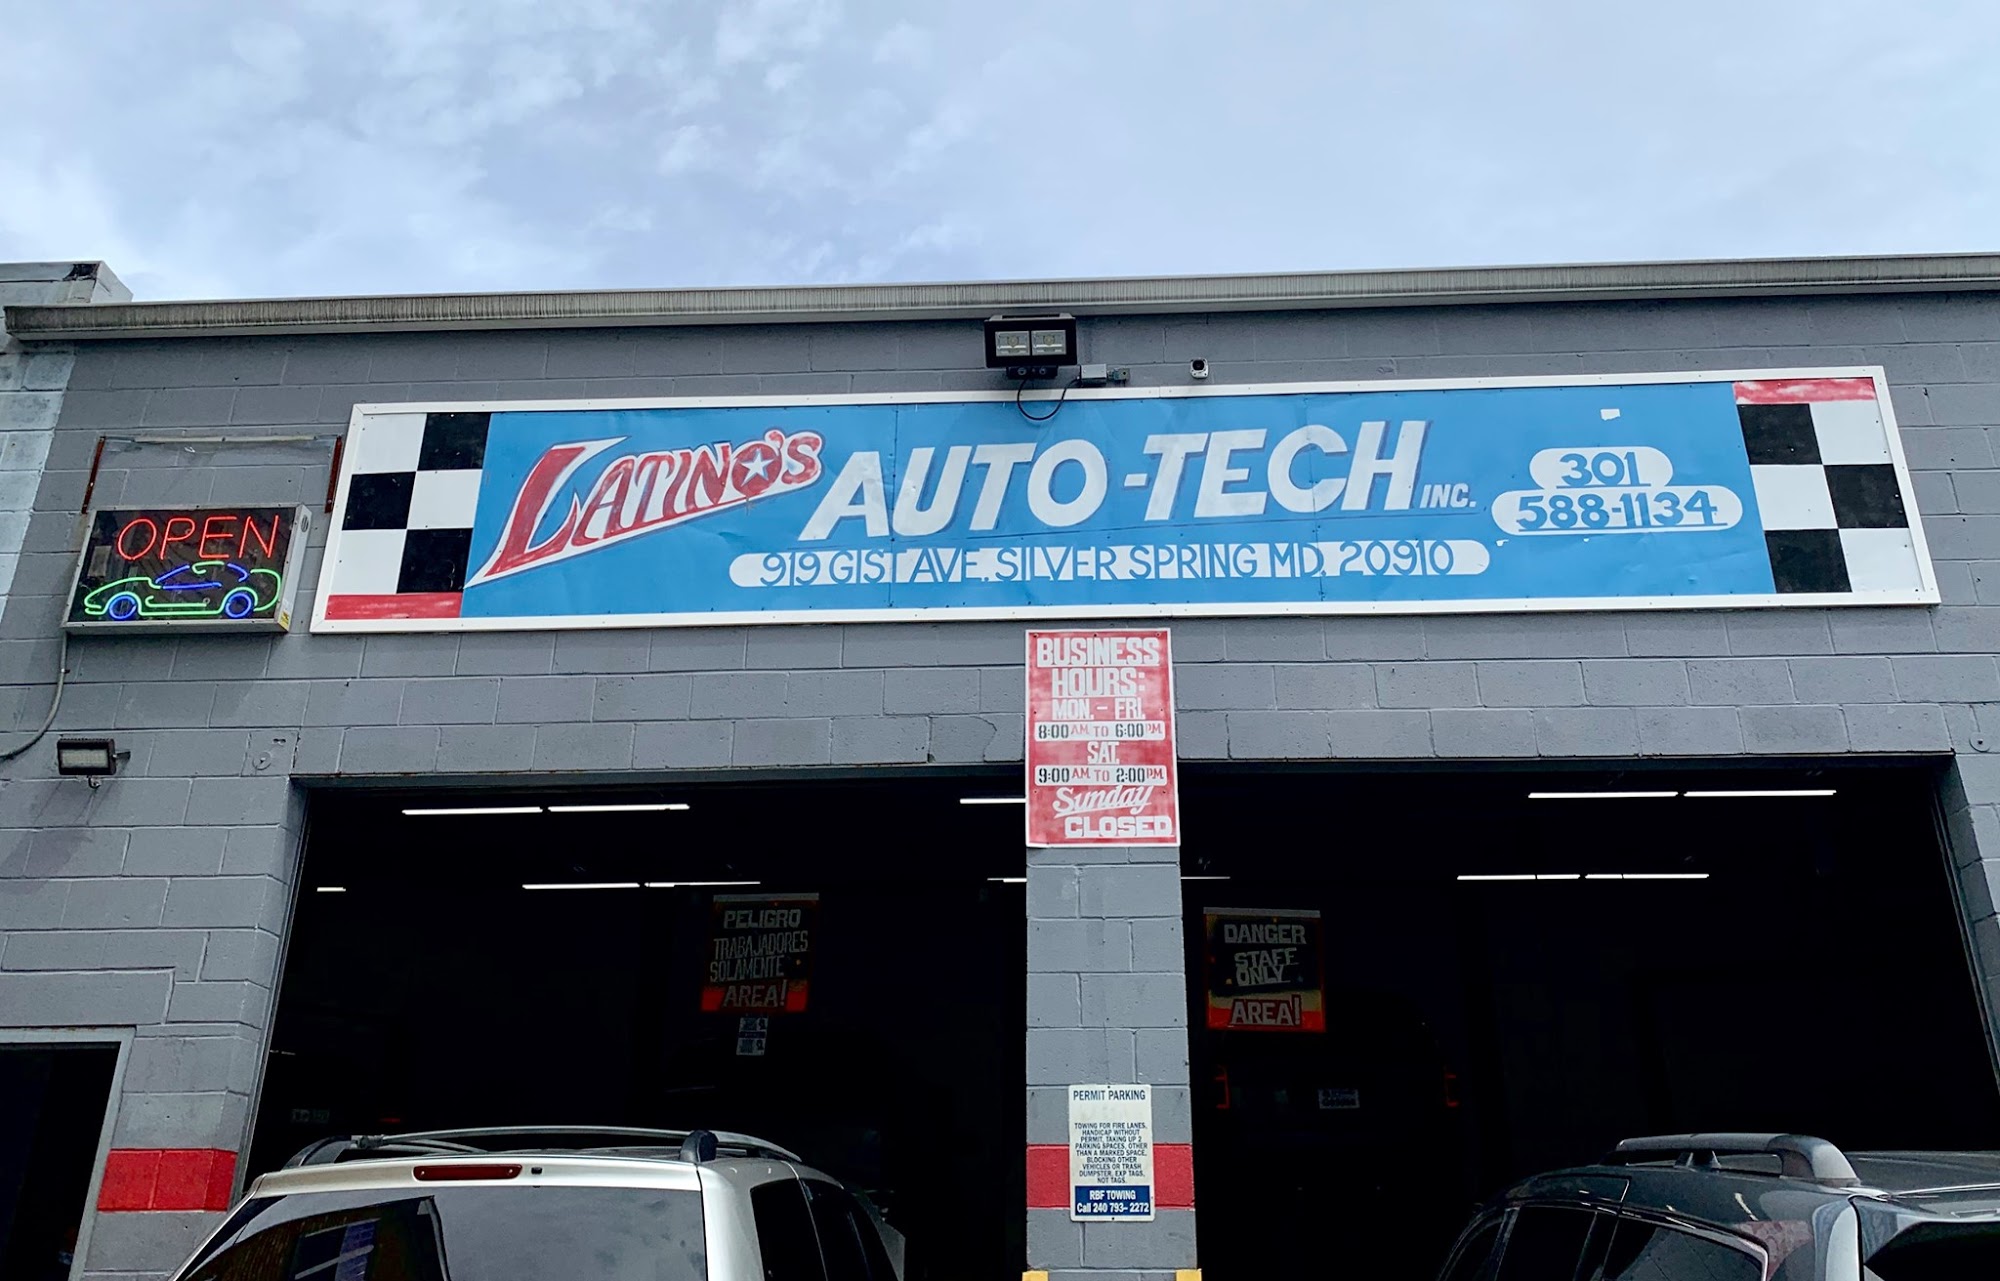 Latino's Auto-Tech Inc.